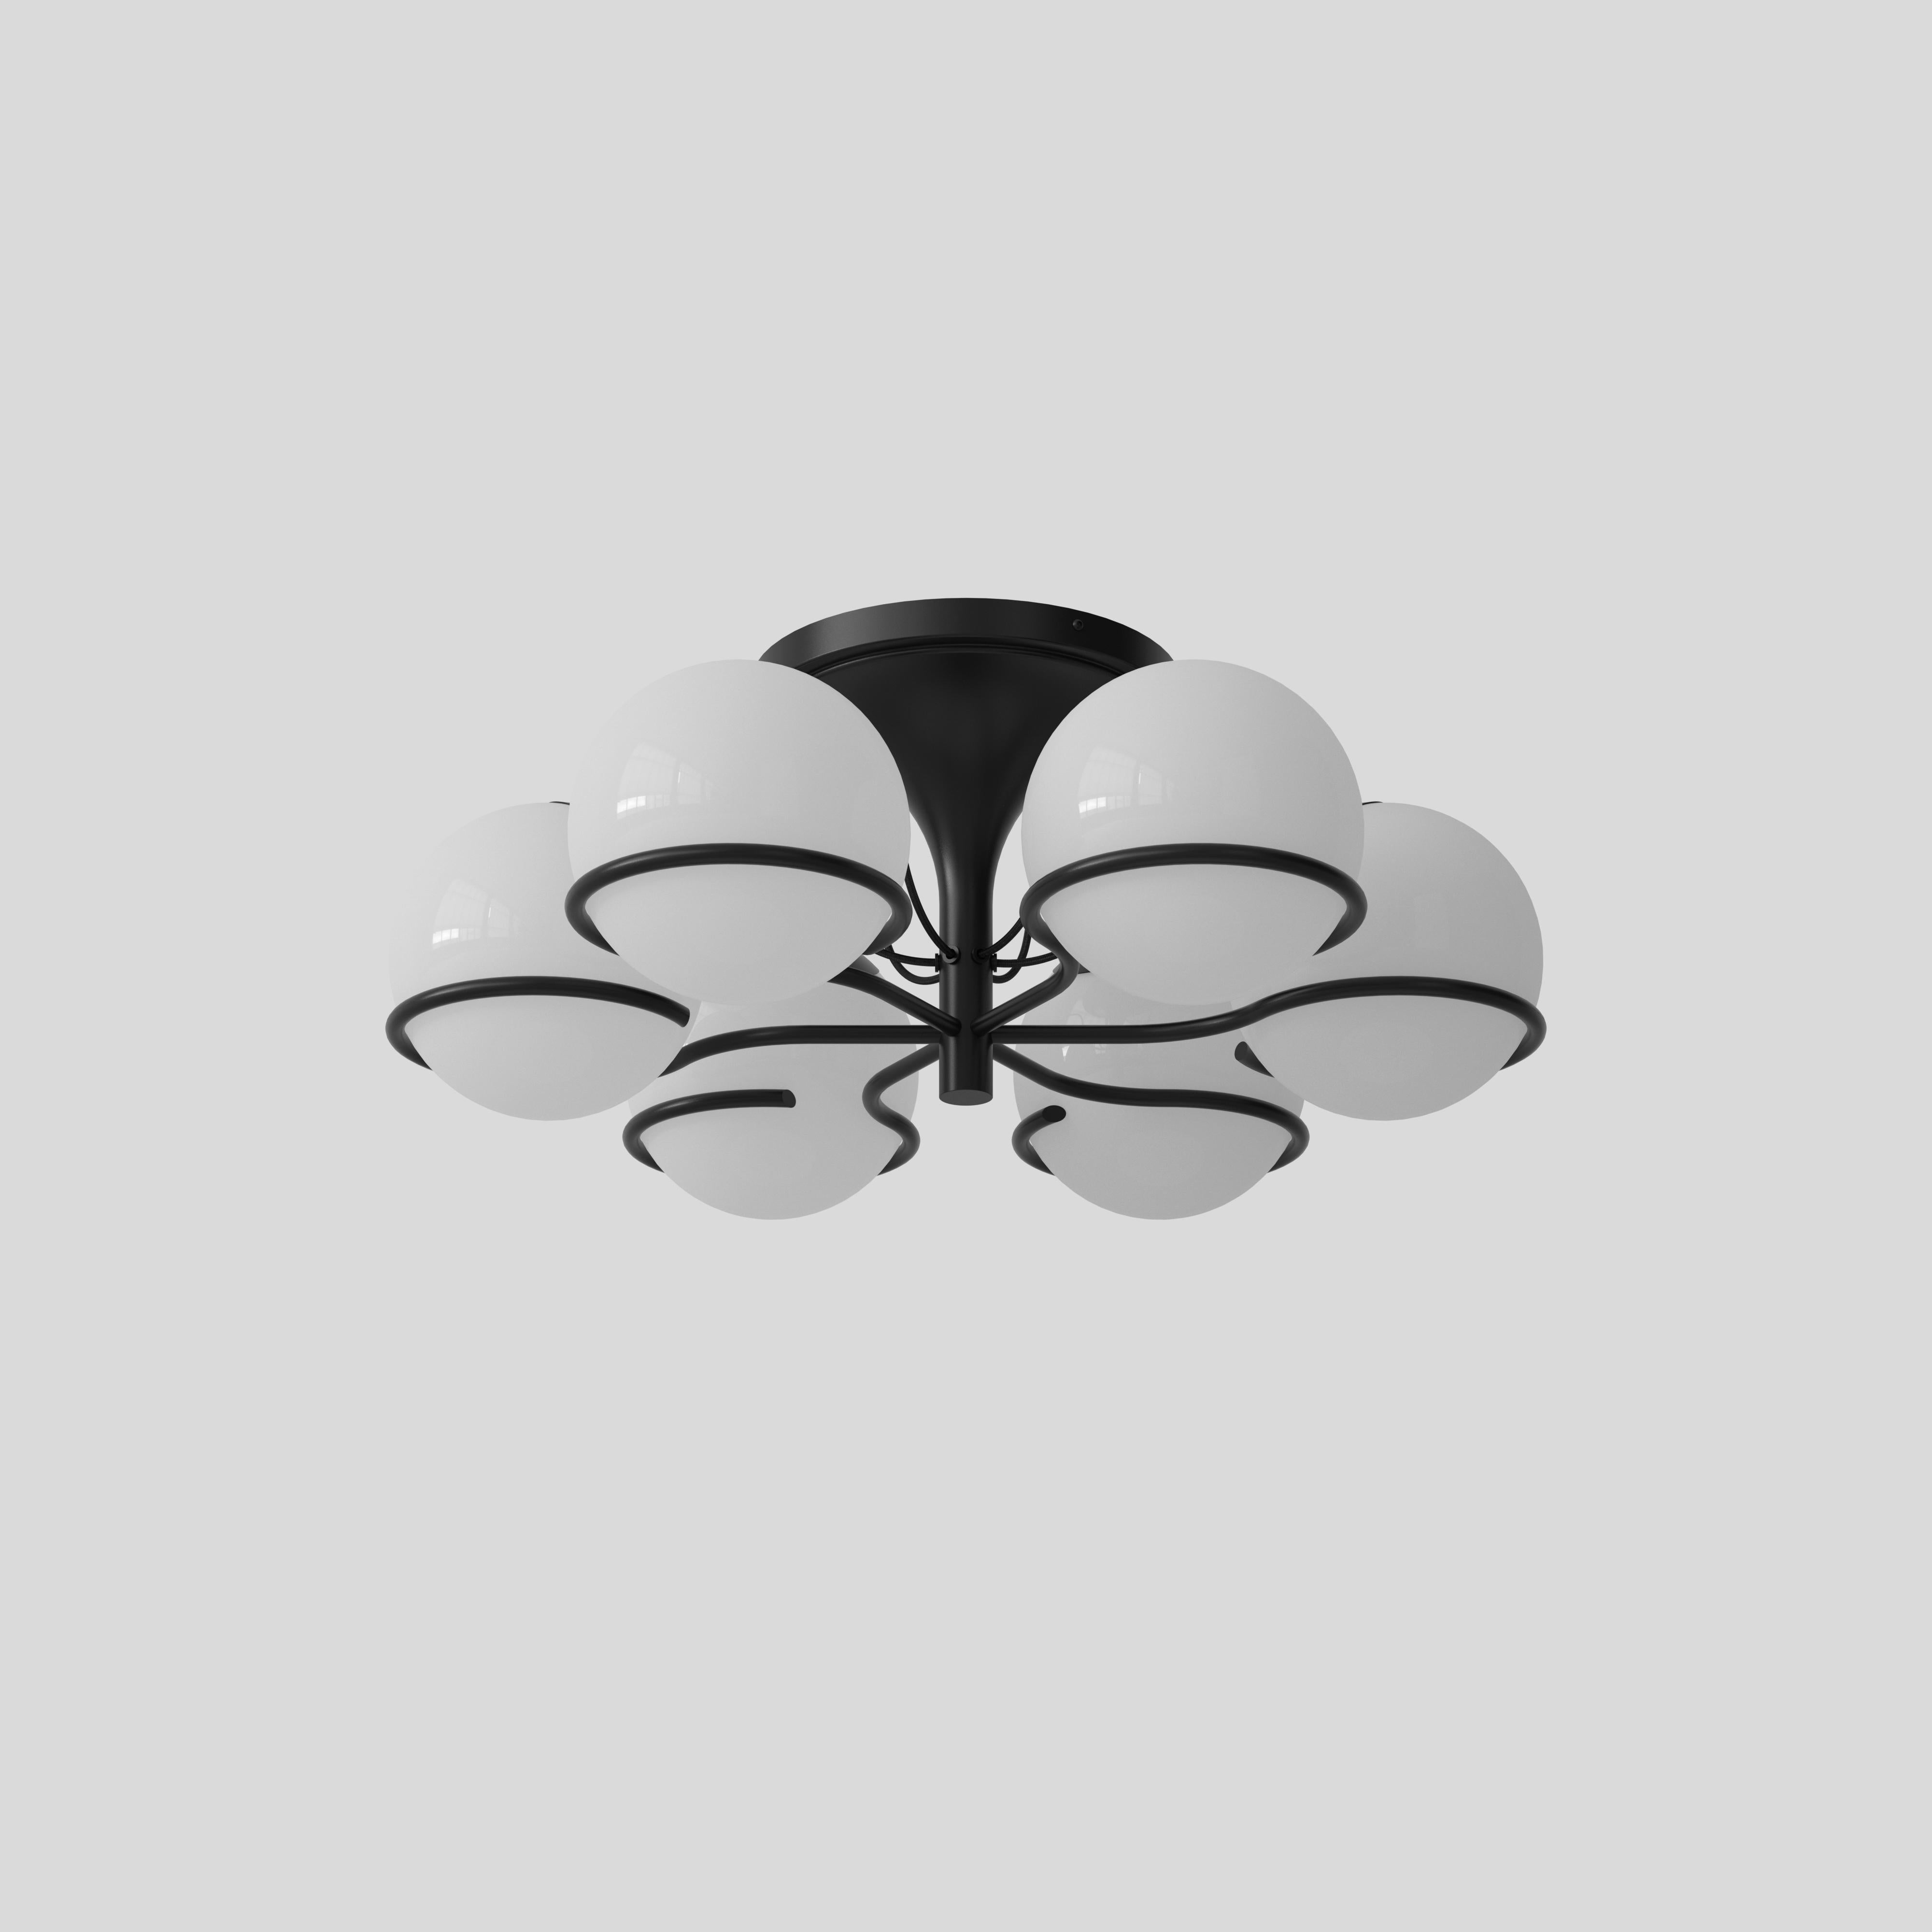 Modèle 2042/6
Design par Gino Sarfatti
Avec Le Sfere Plafone, modèle 2042/6 de 1963, une autre des belles interprétations de la sphère lumineuse par Gino Sarfatti est réintroduite. Ce plafonnier raffiné est composé de six sphères en verre opalin